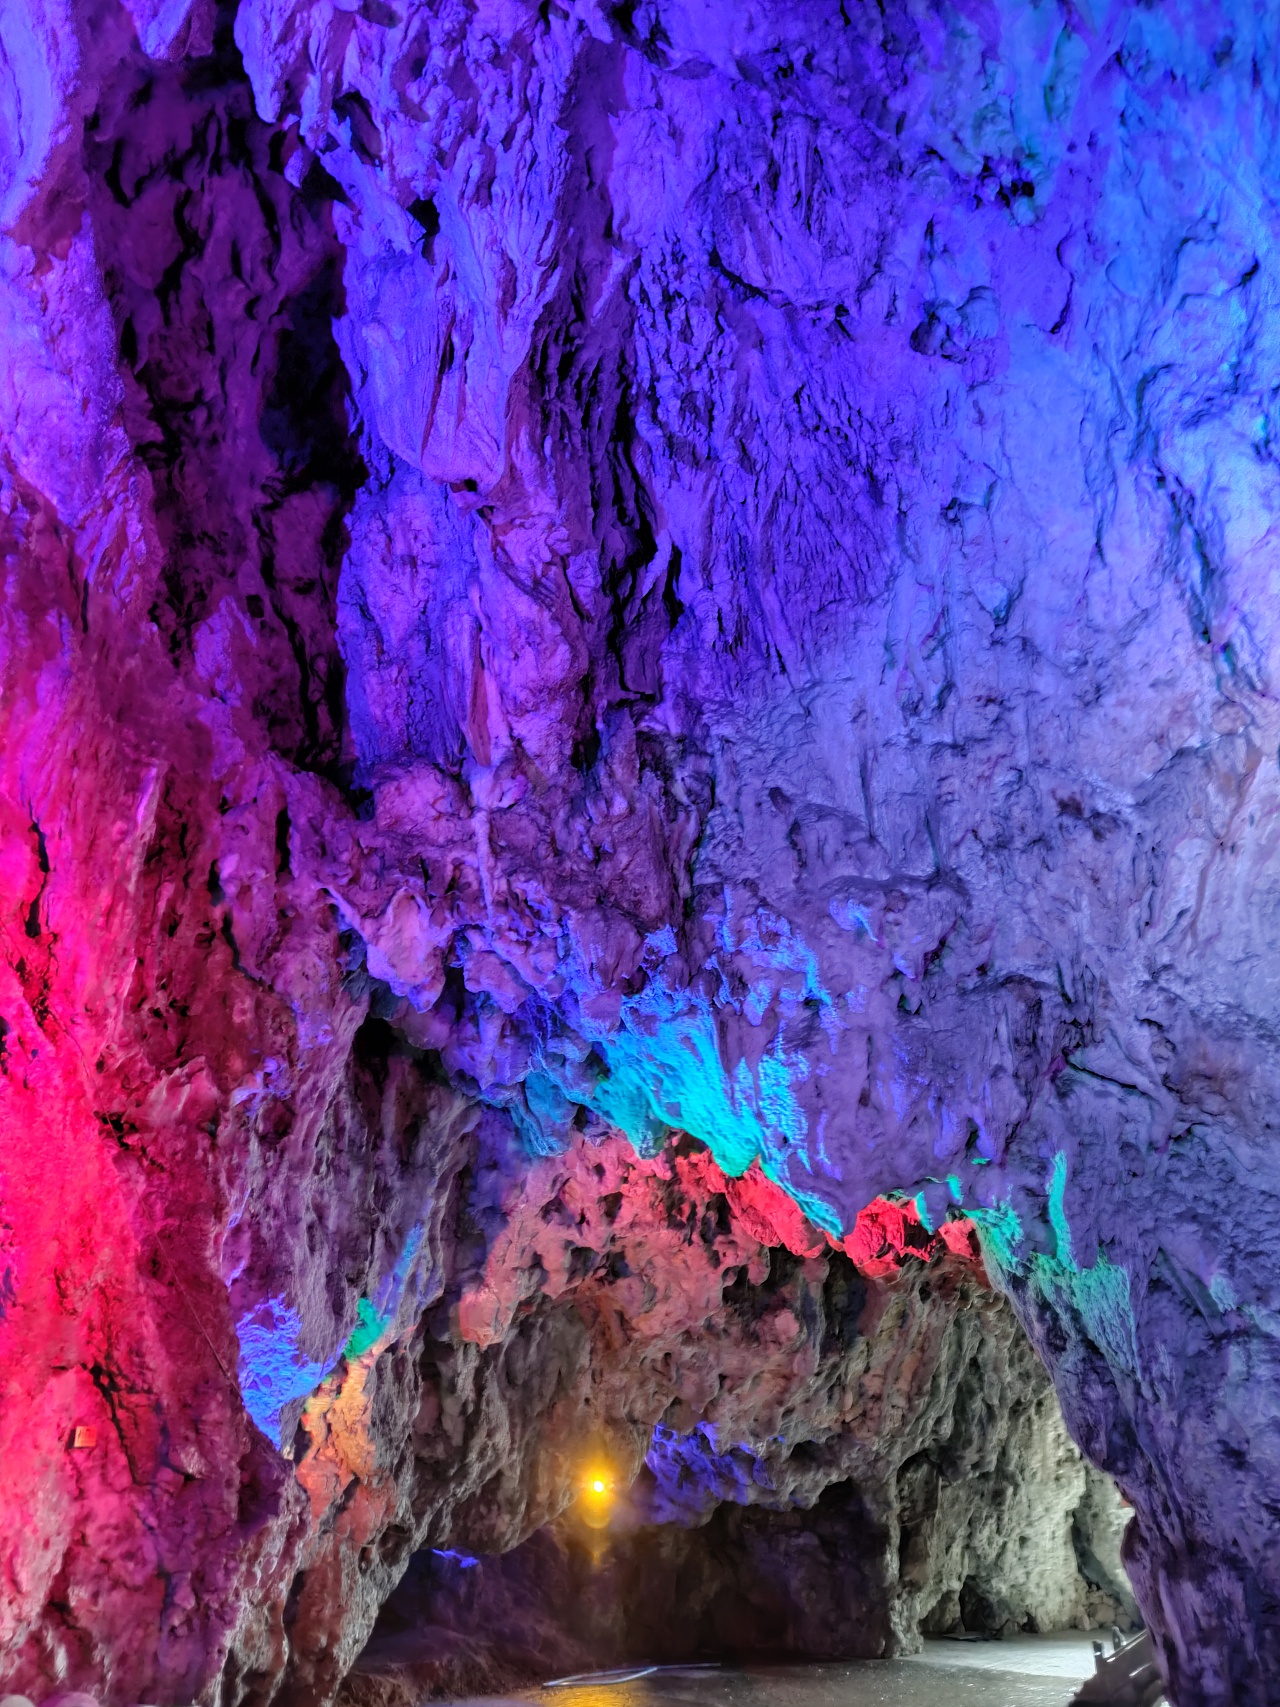 柞水溶洞国家地质公园是以溶洞、峡谷、瀑布、古生物化石等地质遗迹景|柞水溶洞|溶洞|钟乳石_新浪新闻